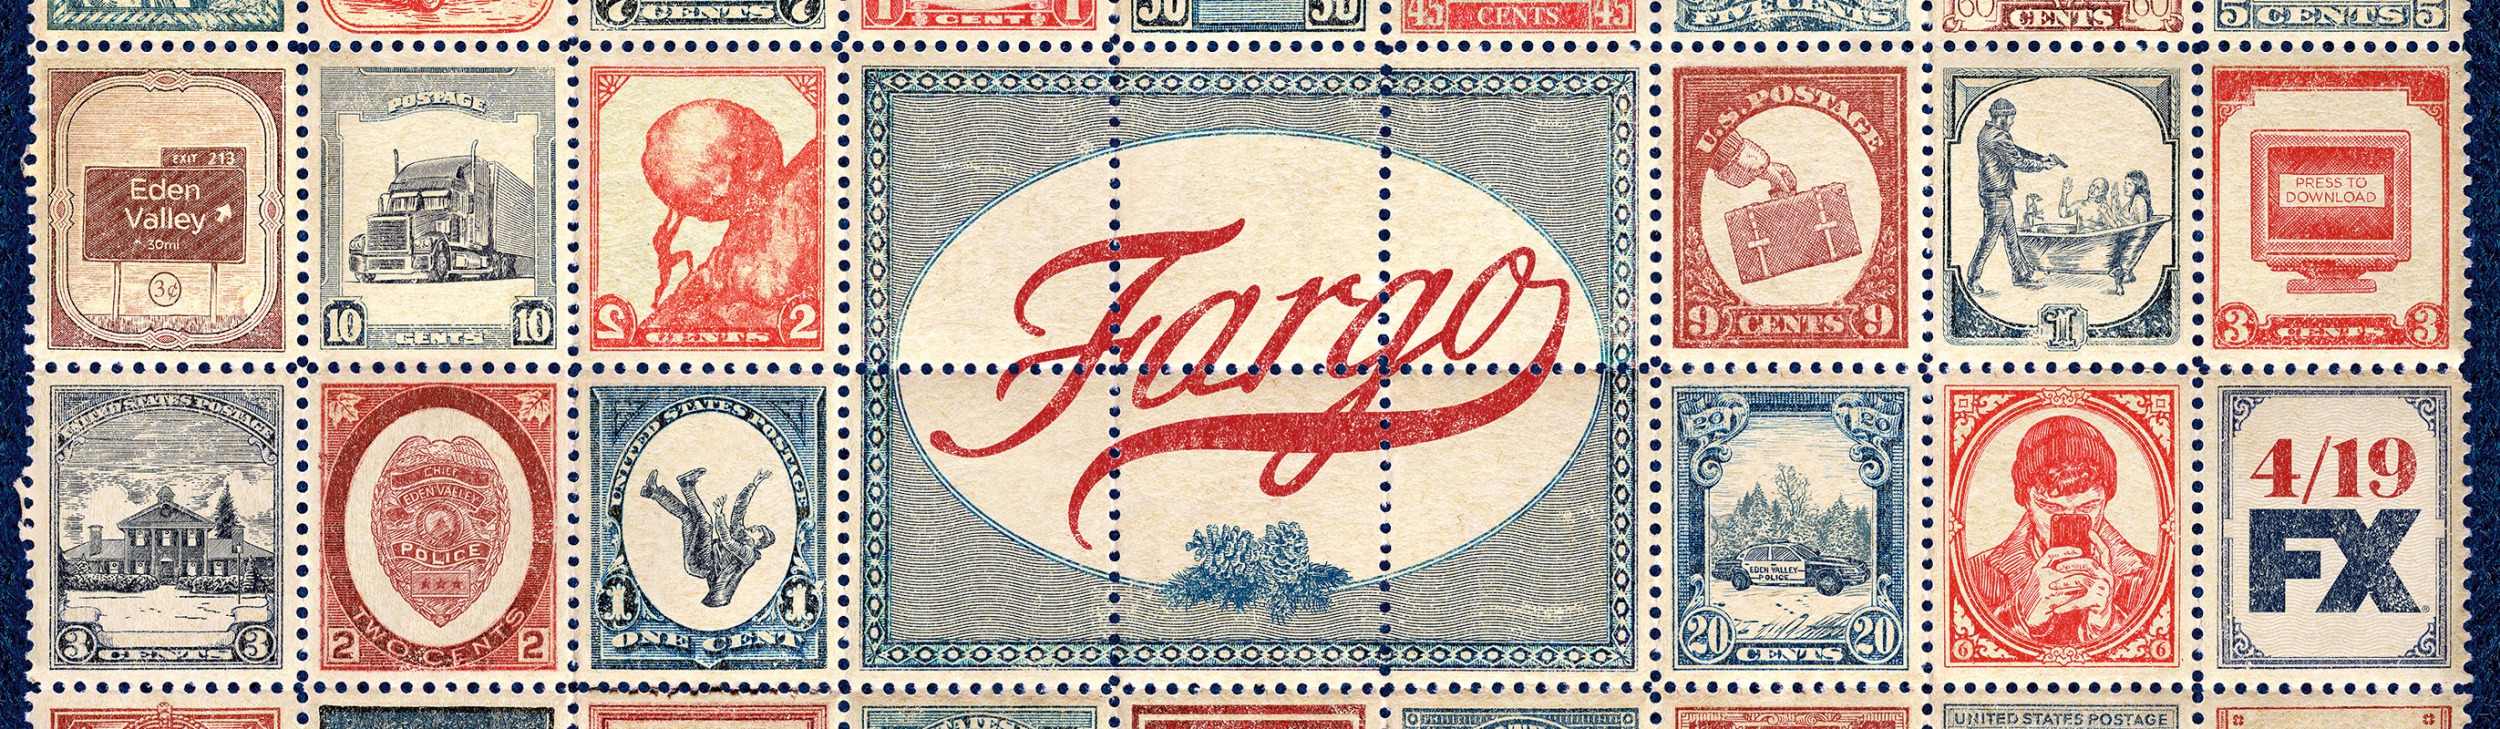 Mega Sized TV Poster Image for Fargo (#6 of 11)